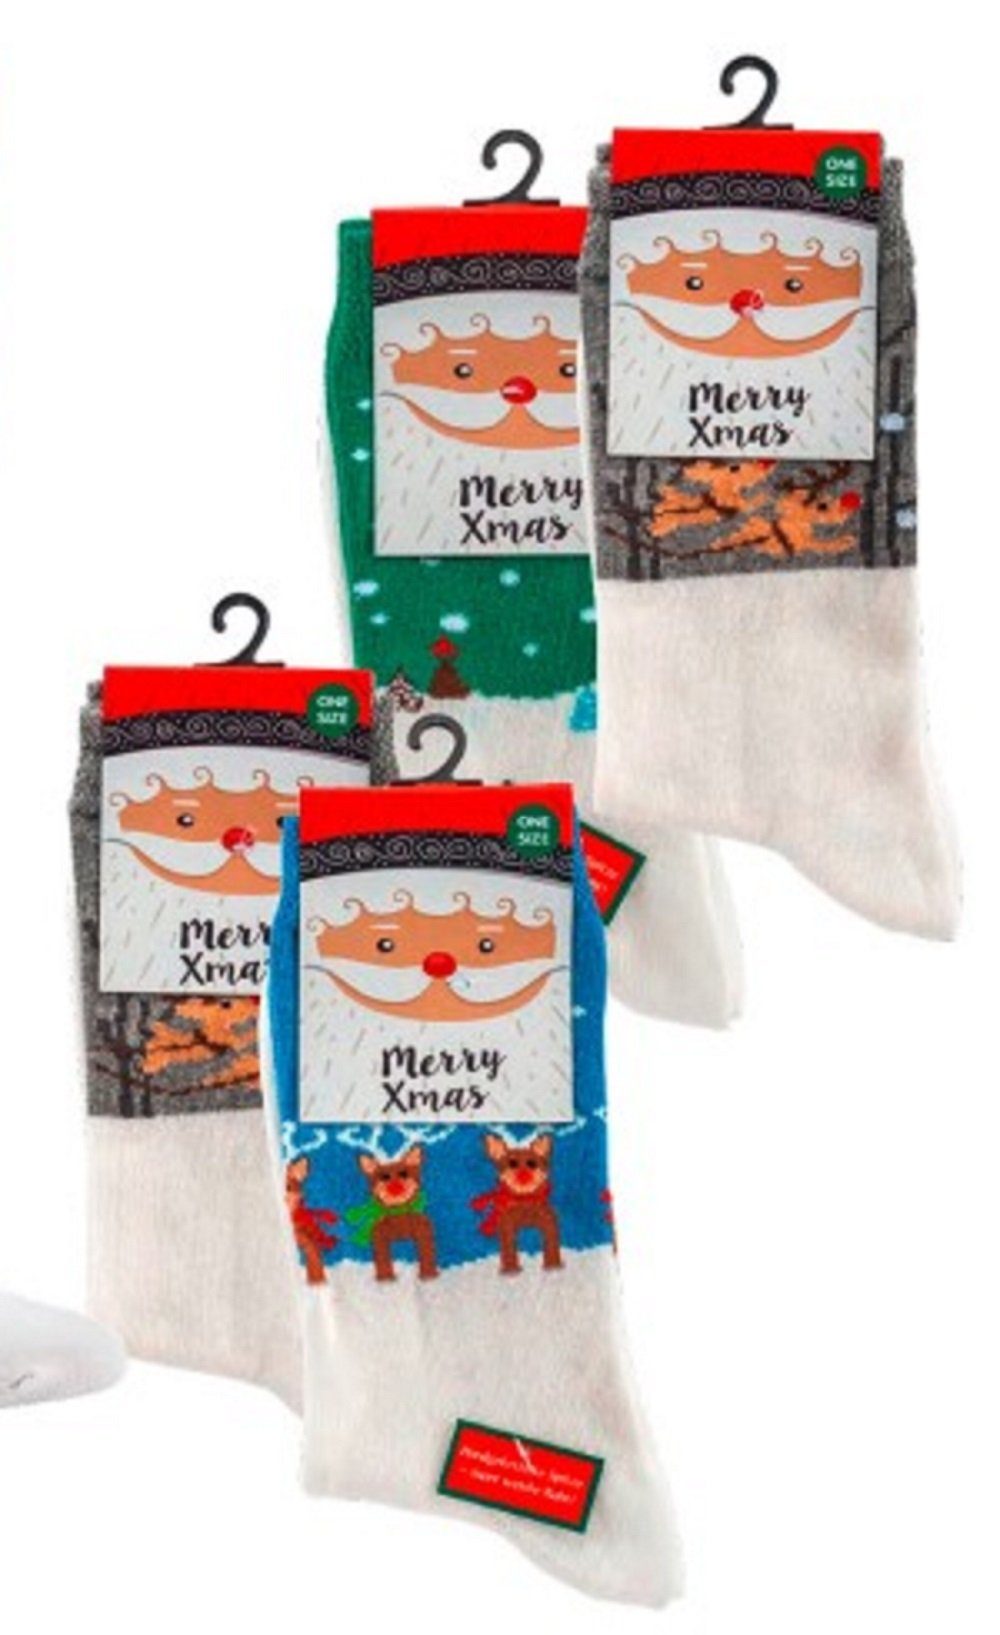 1-Paar, (1 Socks Stück) Socks Weihnachtslandschaft Freizeitsocken Fun 4 36-42 Stück, 1 Grau 4 Fun